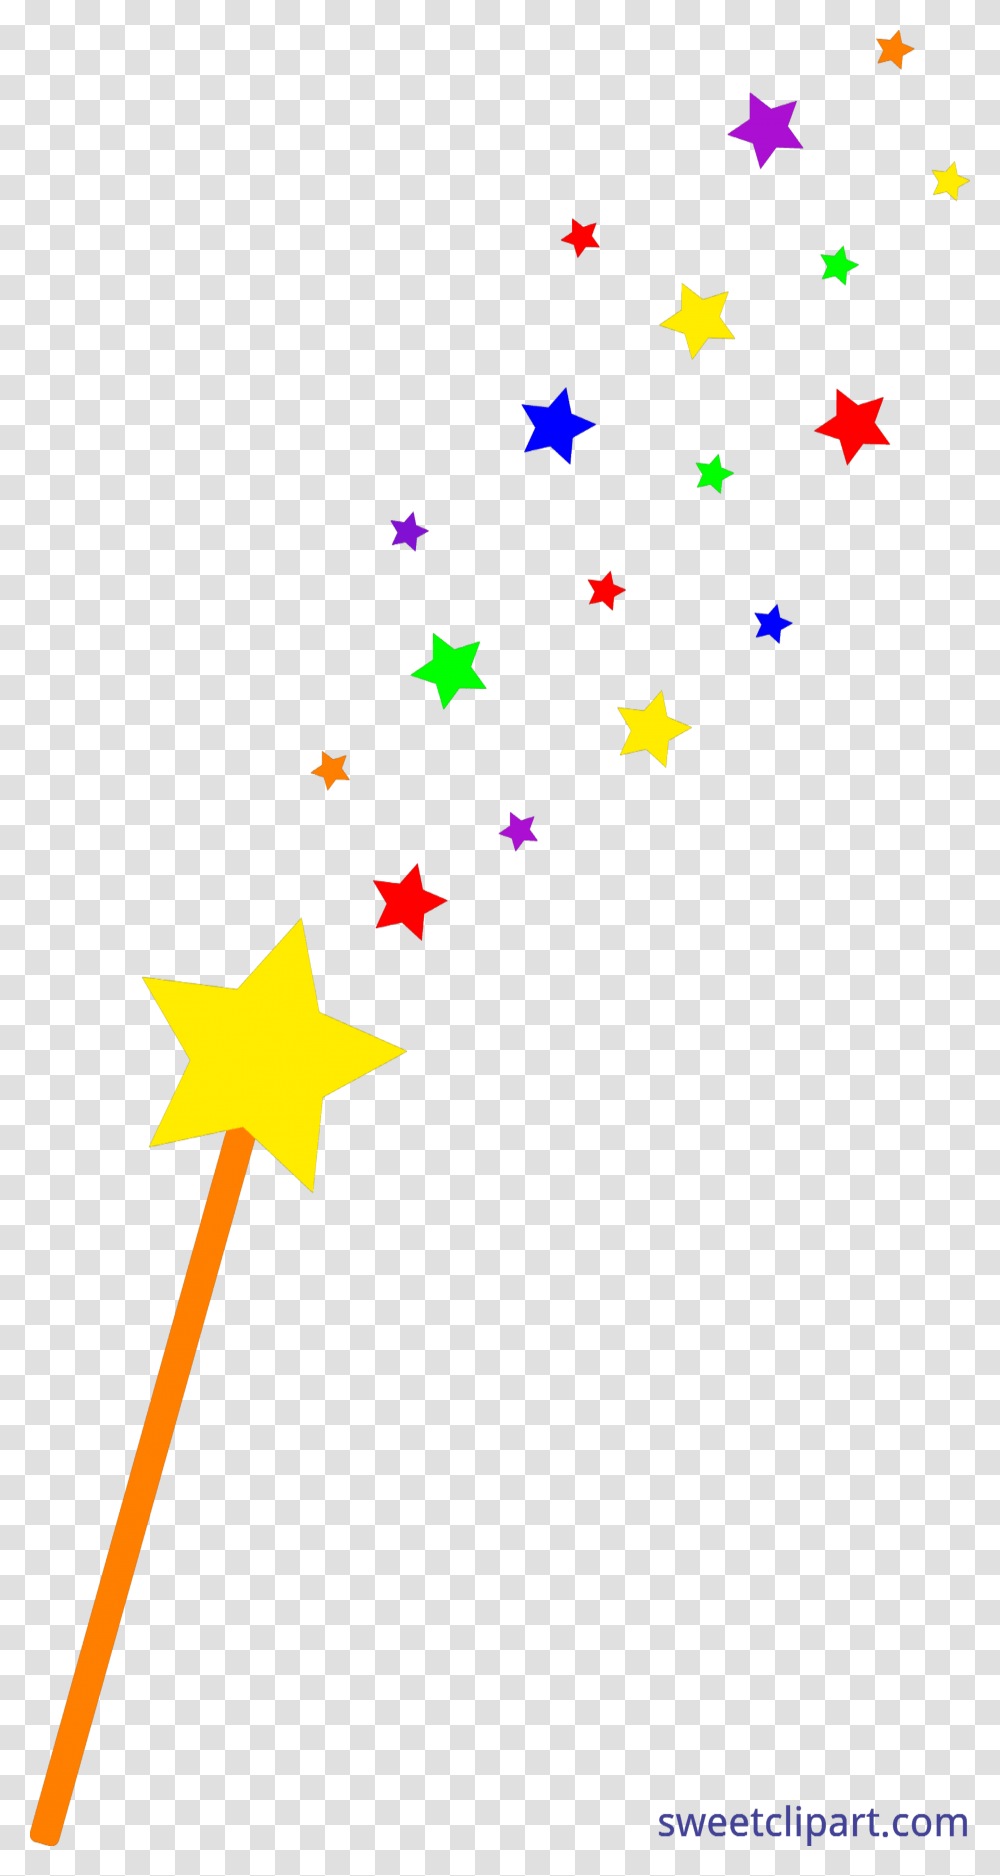 10 Clipart Clipart Magic Wand, Star Symbol, Construction Crane Transparent Png